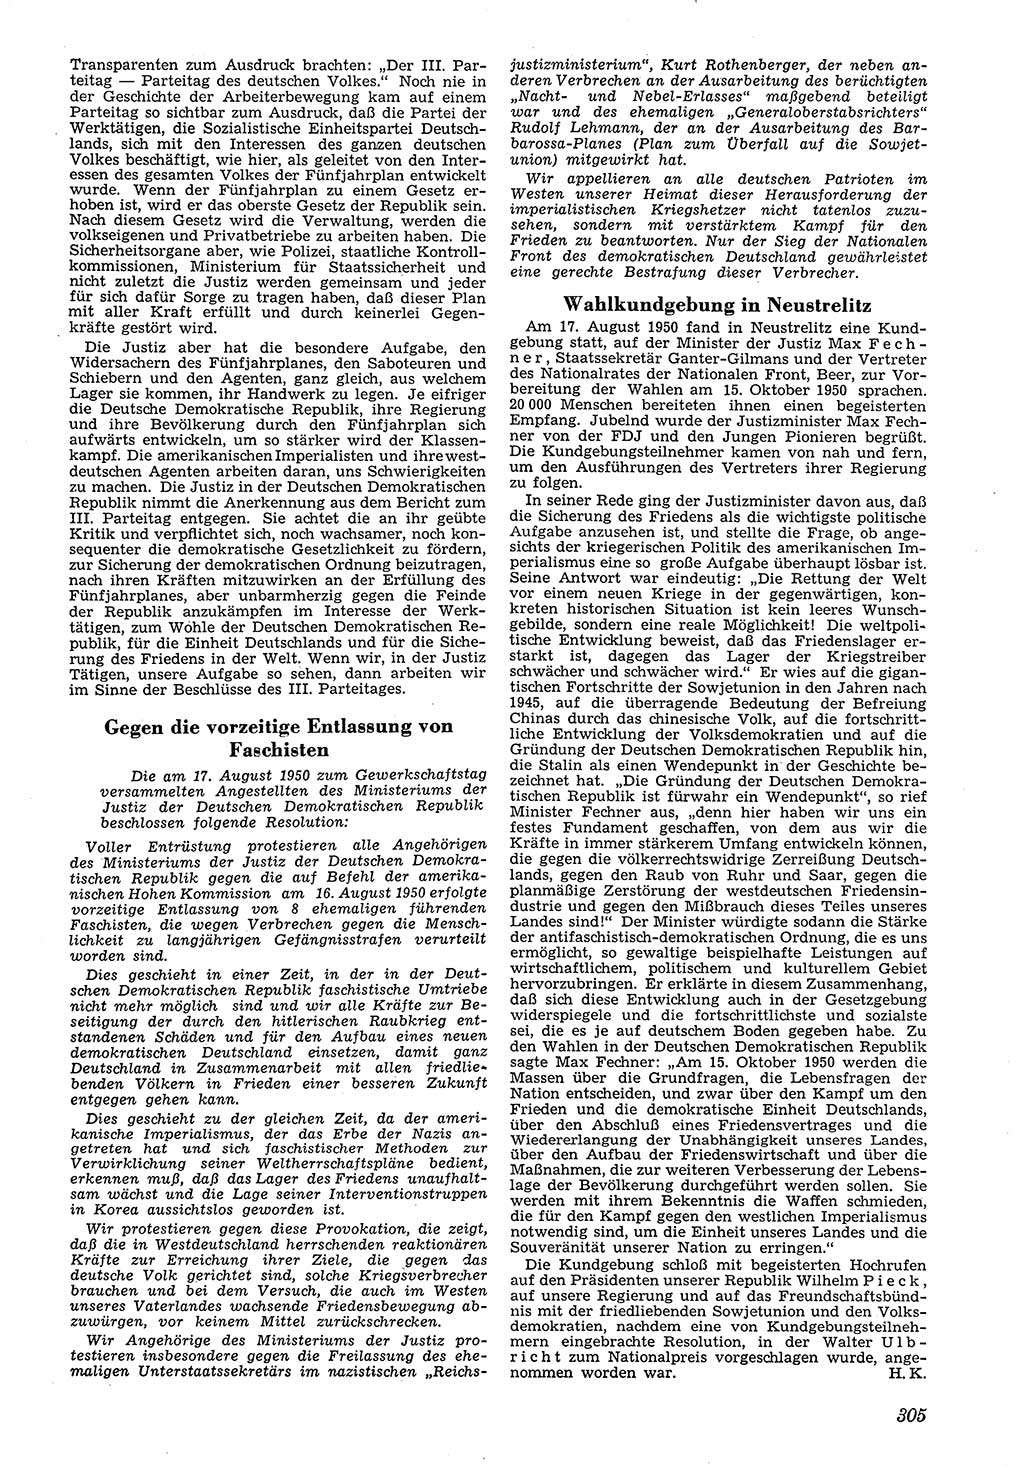 Neue Justiz (NJ), Zeitschrift für Recht und Rechtswissenschaft [Deutsche Demokratische Republik (DDR)], 4. Jahrgang 1950, Seite 305 (NJ DDR 1950, S. 305)